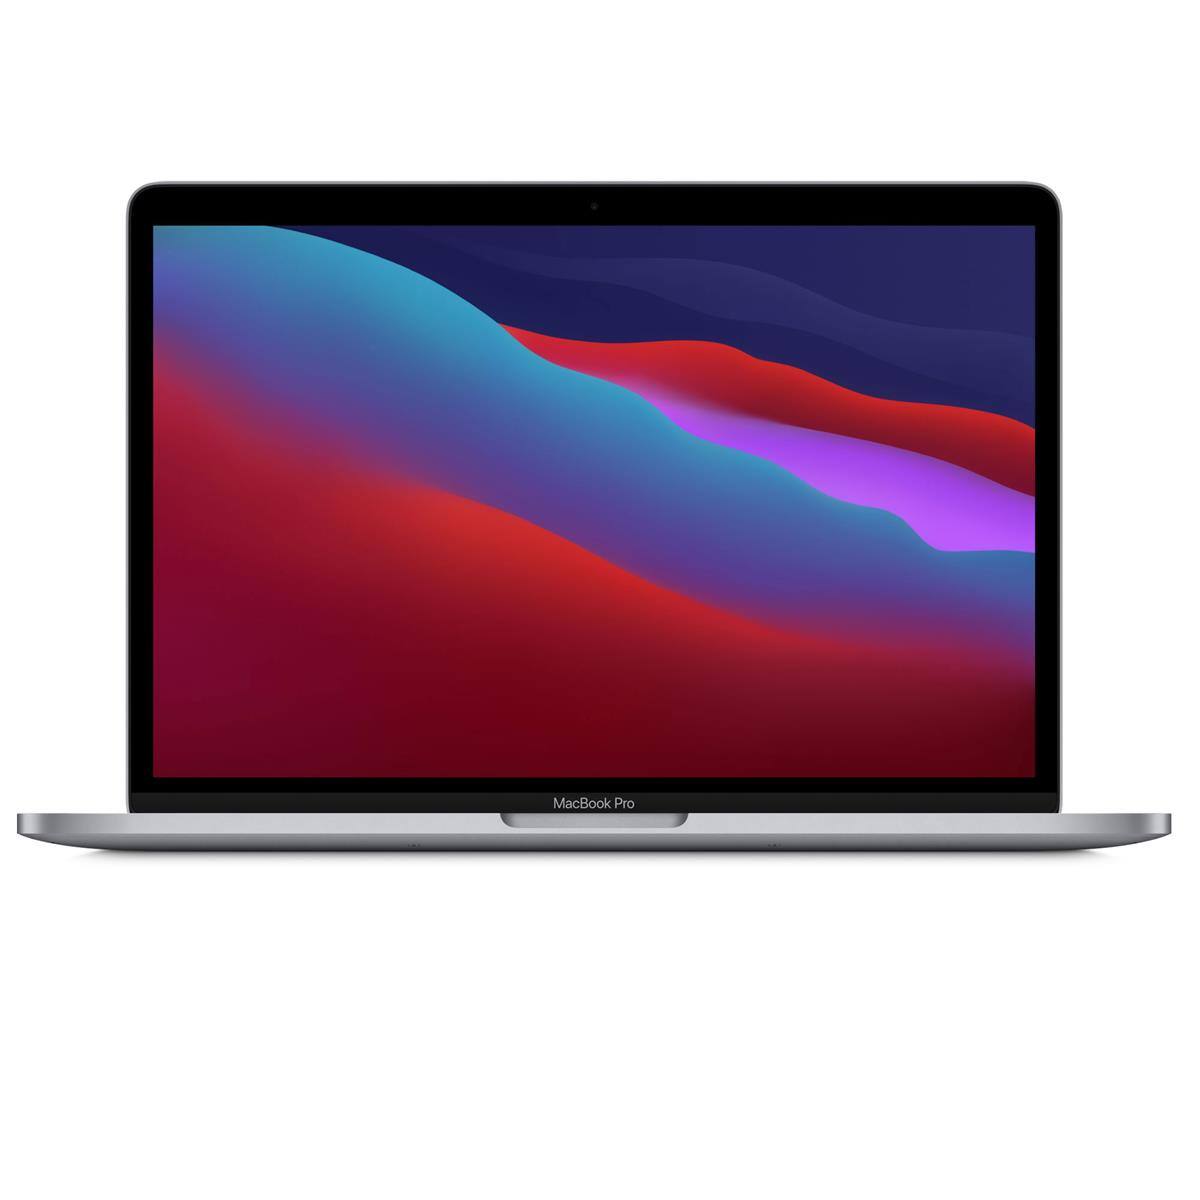 Apple MacBook Pro 13.3" M1 8-core CPU, 16GB, 512GB SSD (Late 2020) $1499 at Adorama